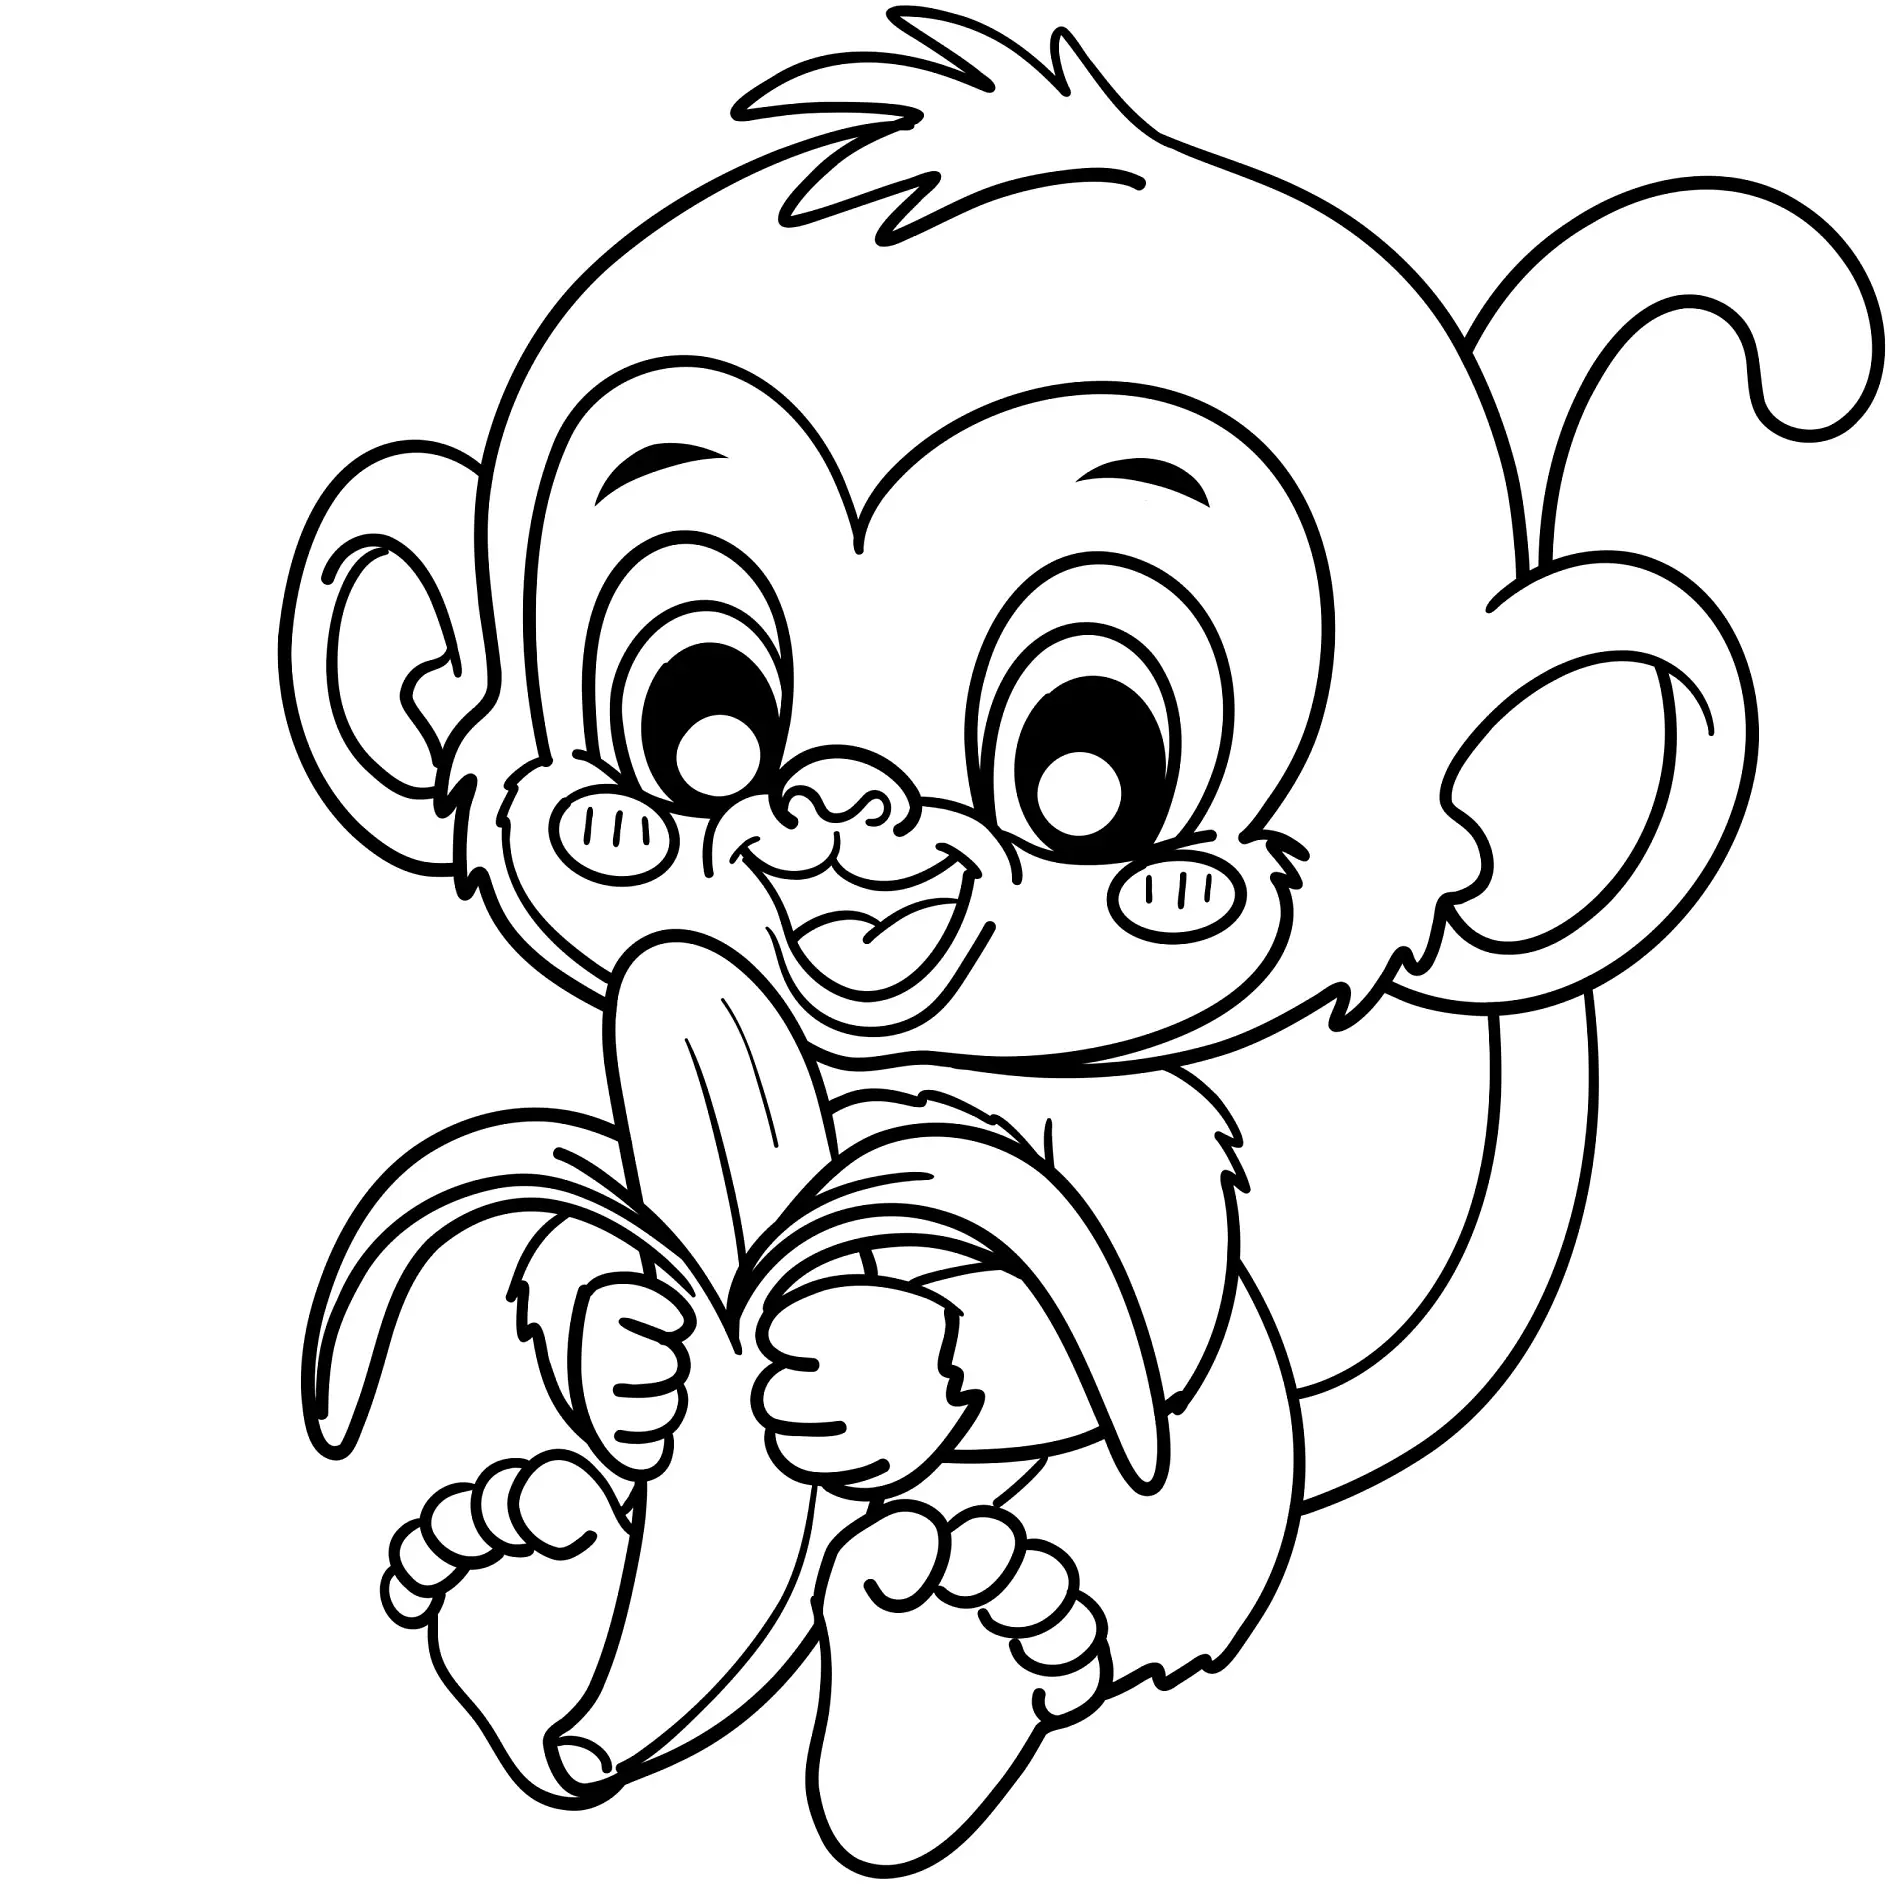 Ausmalbild Affe hält eine geschälte Banane in den Händen